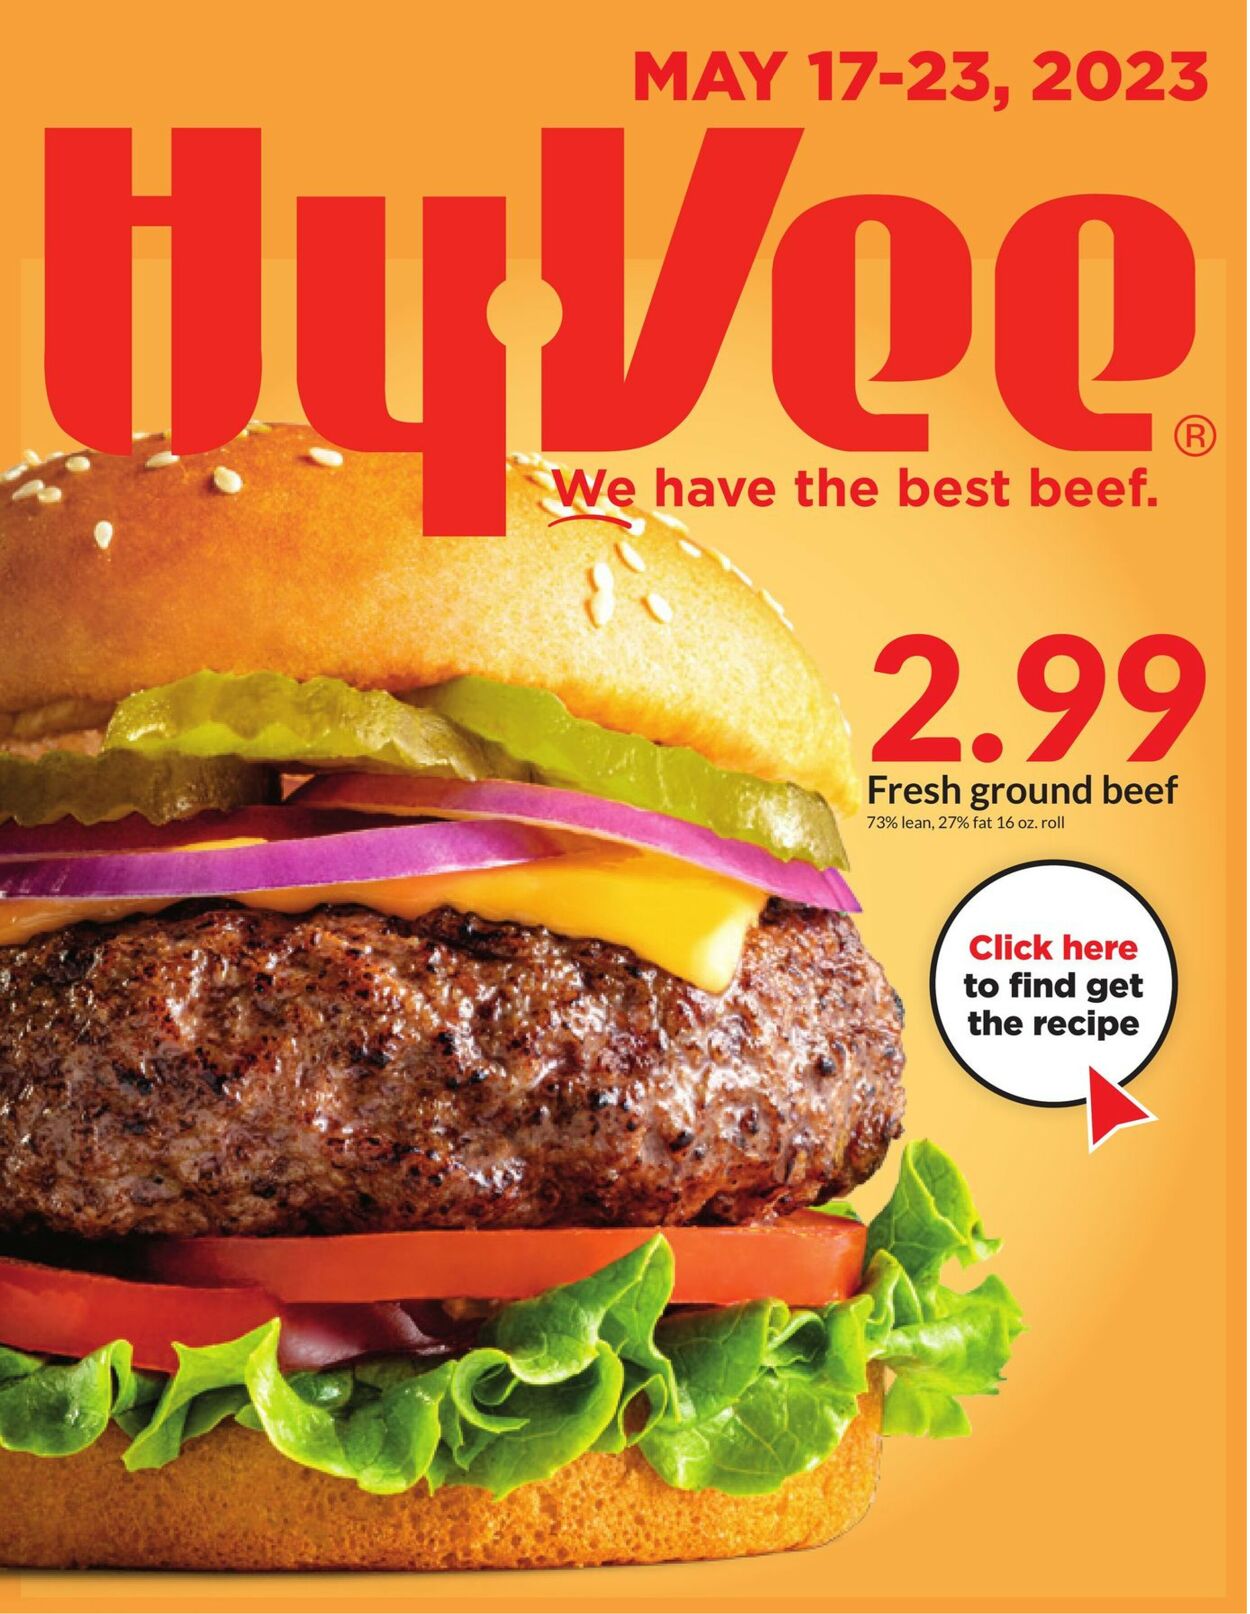 Catalogue HyVee from 05/17/2023